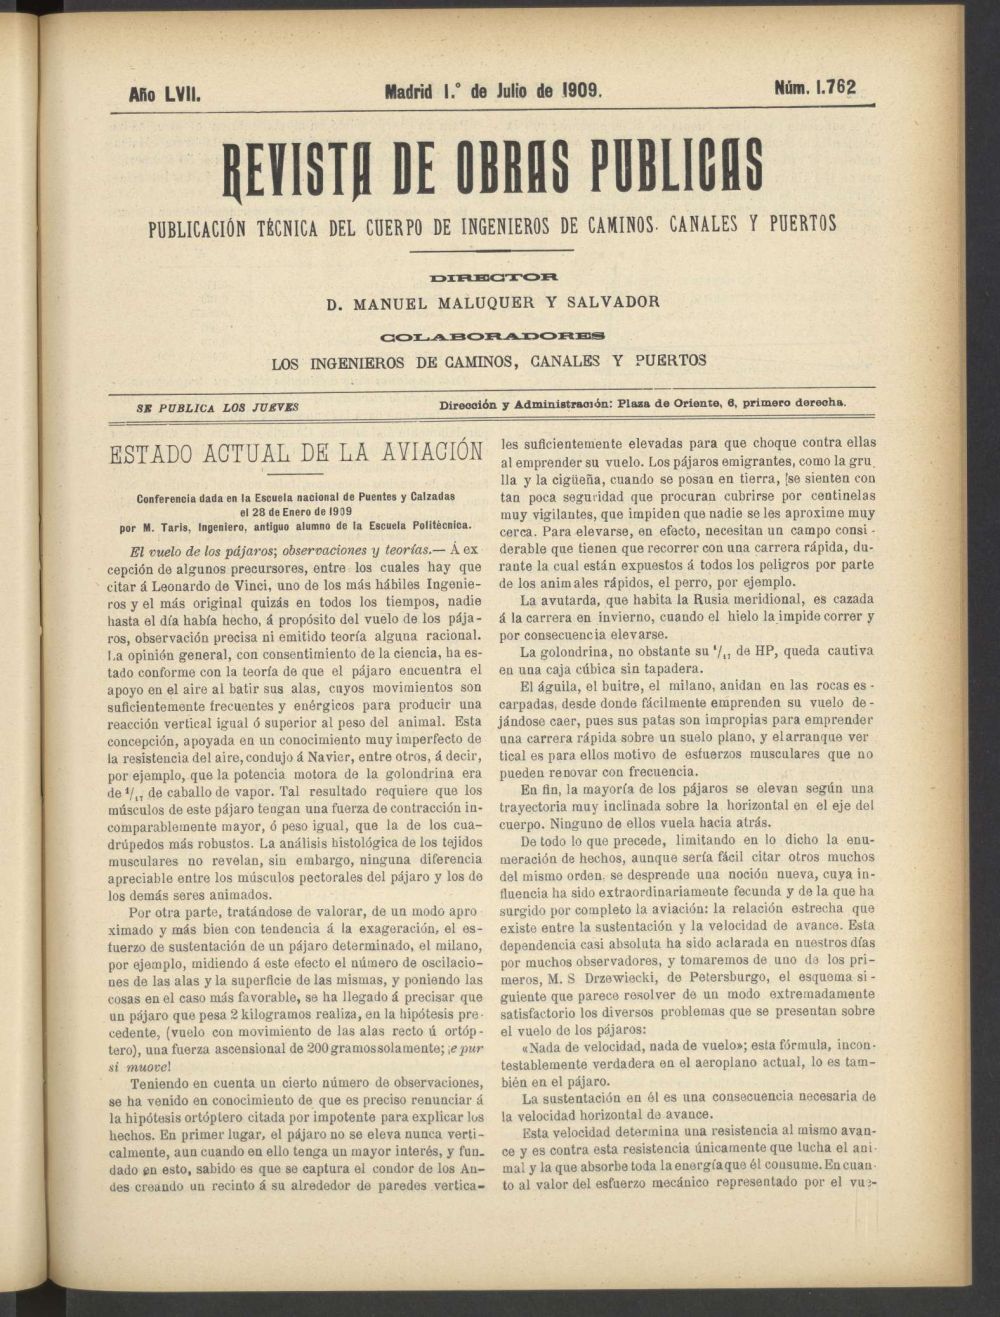 Revista de obras pblicas del 1 de julio de 1909